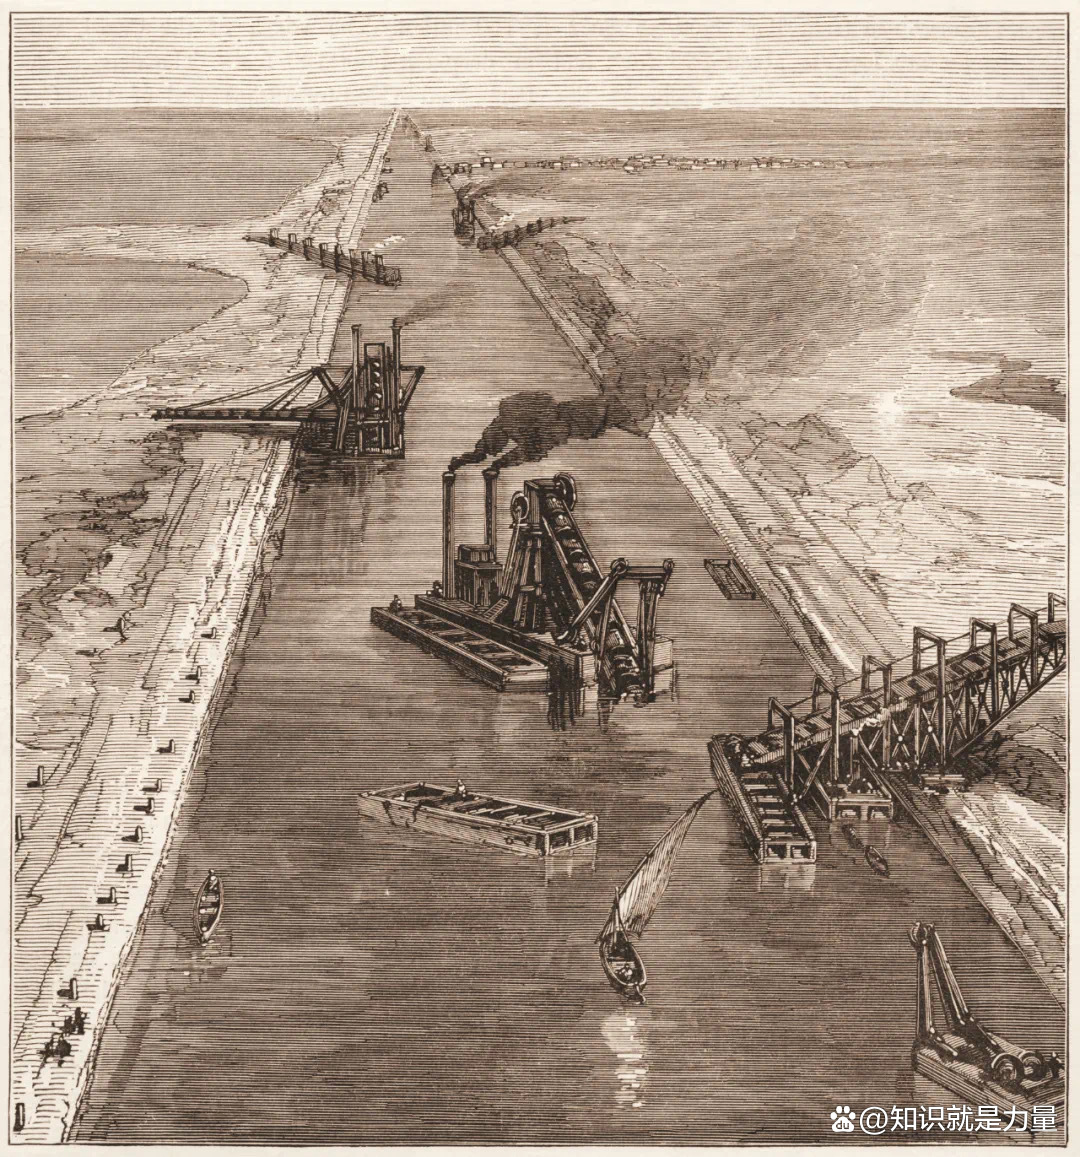 19世纪60年代，埃及苏伊士运河的挖泥船